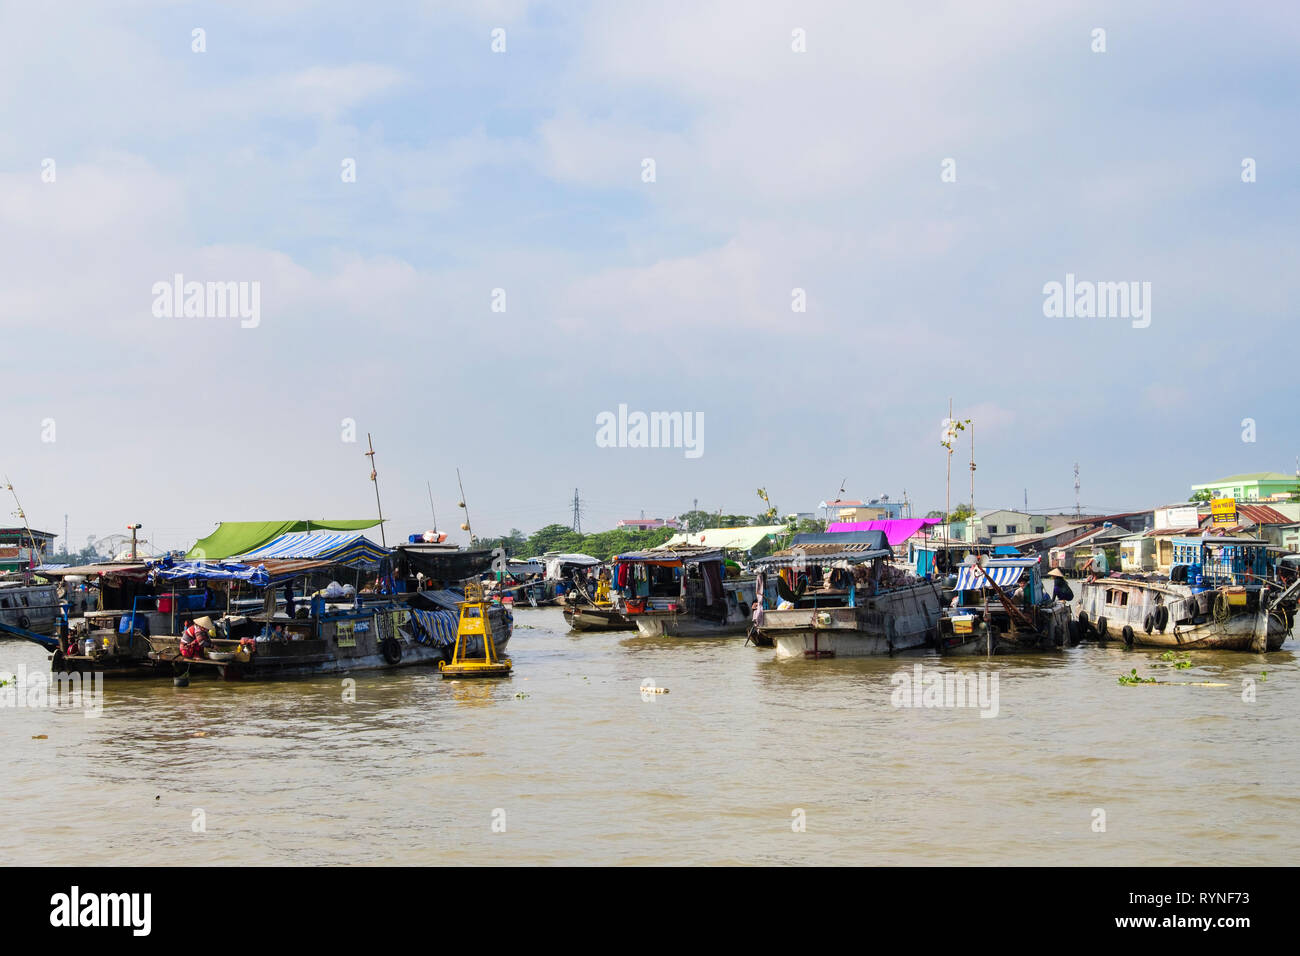 Maison traditionnelle de bateaux dans le marché flottant sur la rivière Hau. Can Tho, Delta du Mékong, Vietnam, Asie Banque D'Images